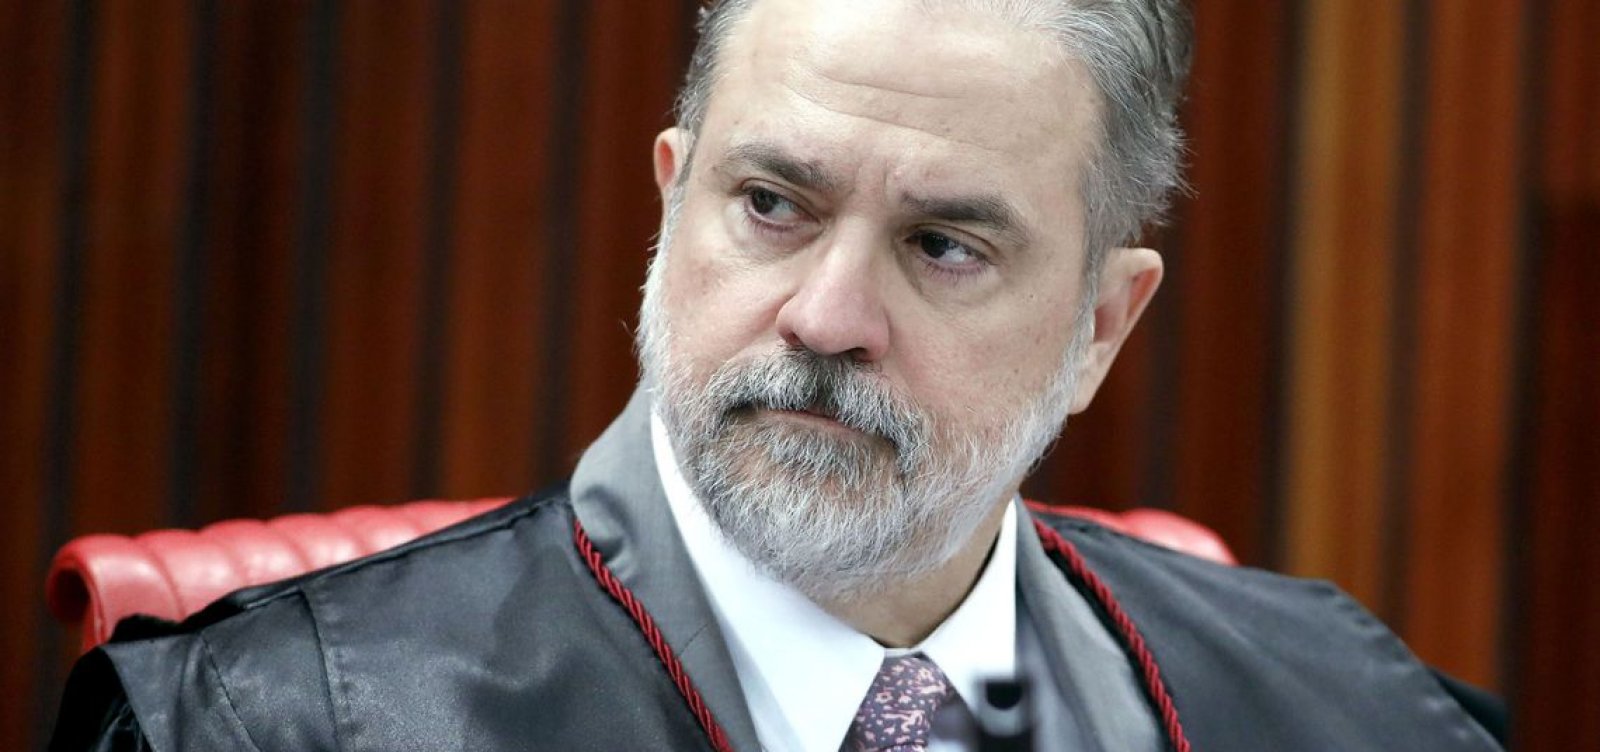 Procuradores renunciam à chefia do MPF em Sergipe após nomeação de Augusto Aras à PGR